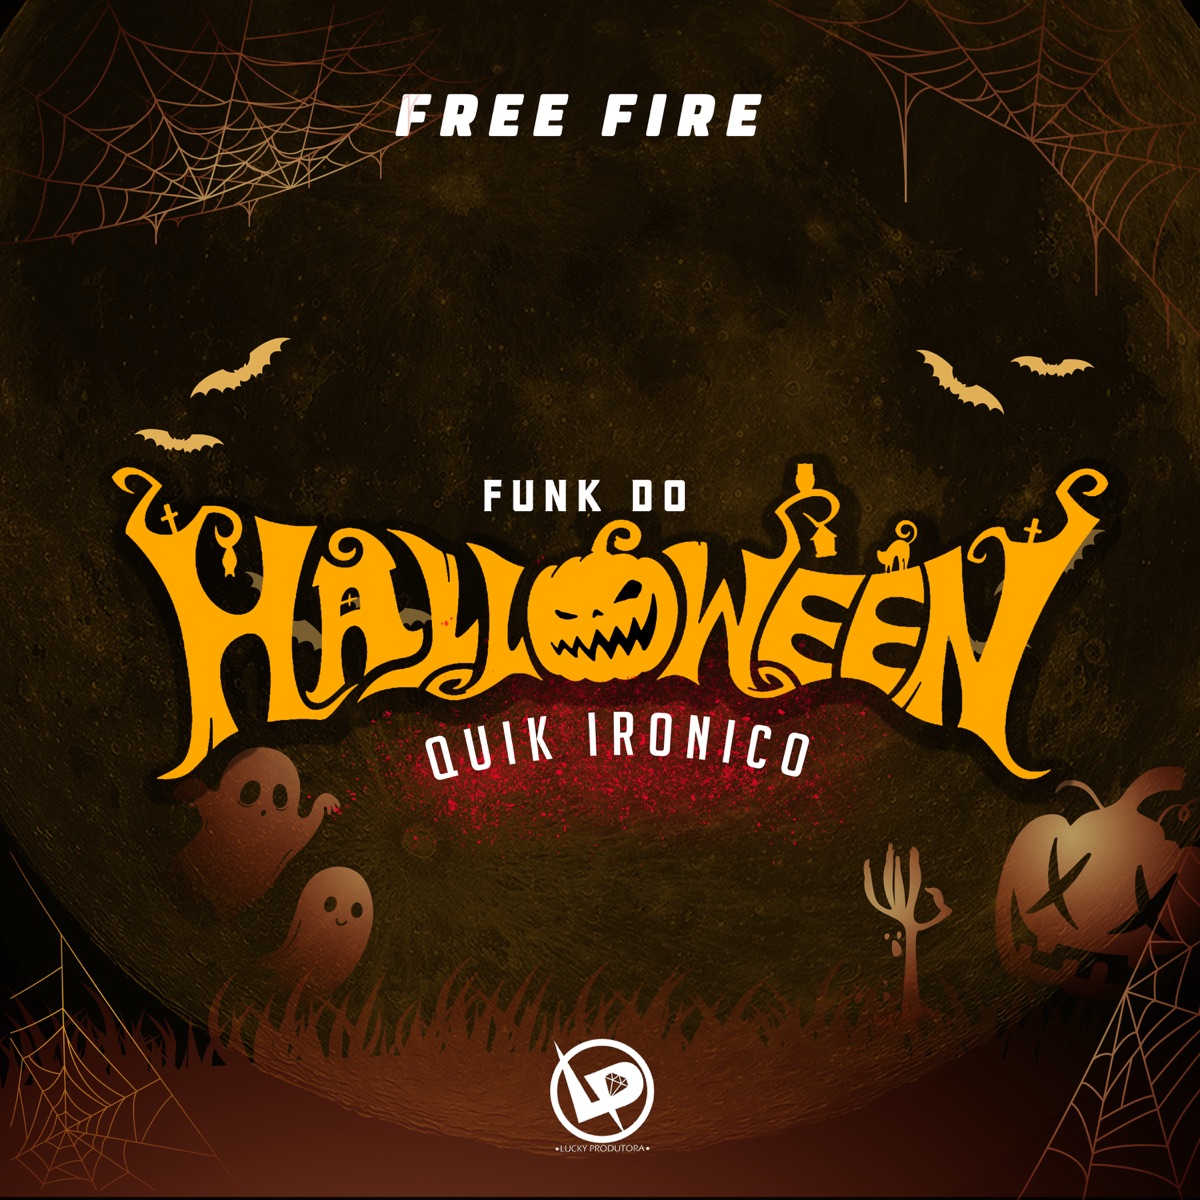 Vou Jogar e Mostrar pra Tropa Toda (Free Fire) - Single - Album by Quik  Ironico & DJ C4 - Apple Music